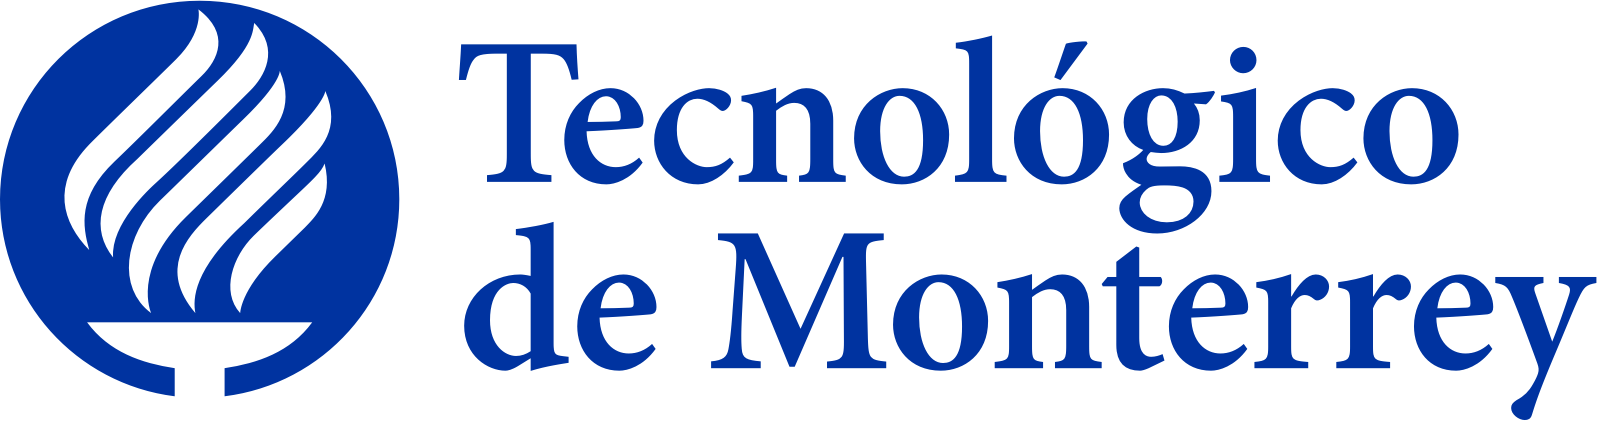 tecnologico de monterrey itesm logo